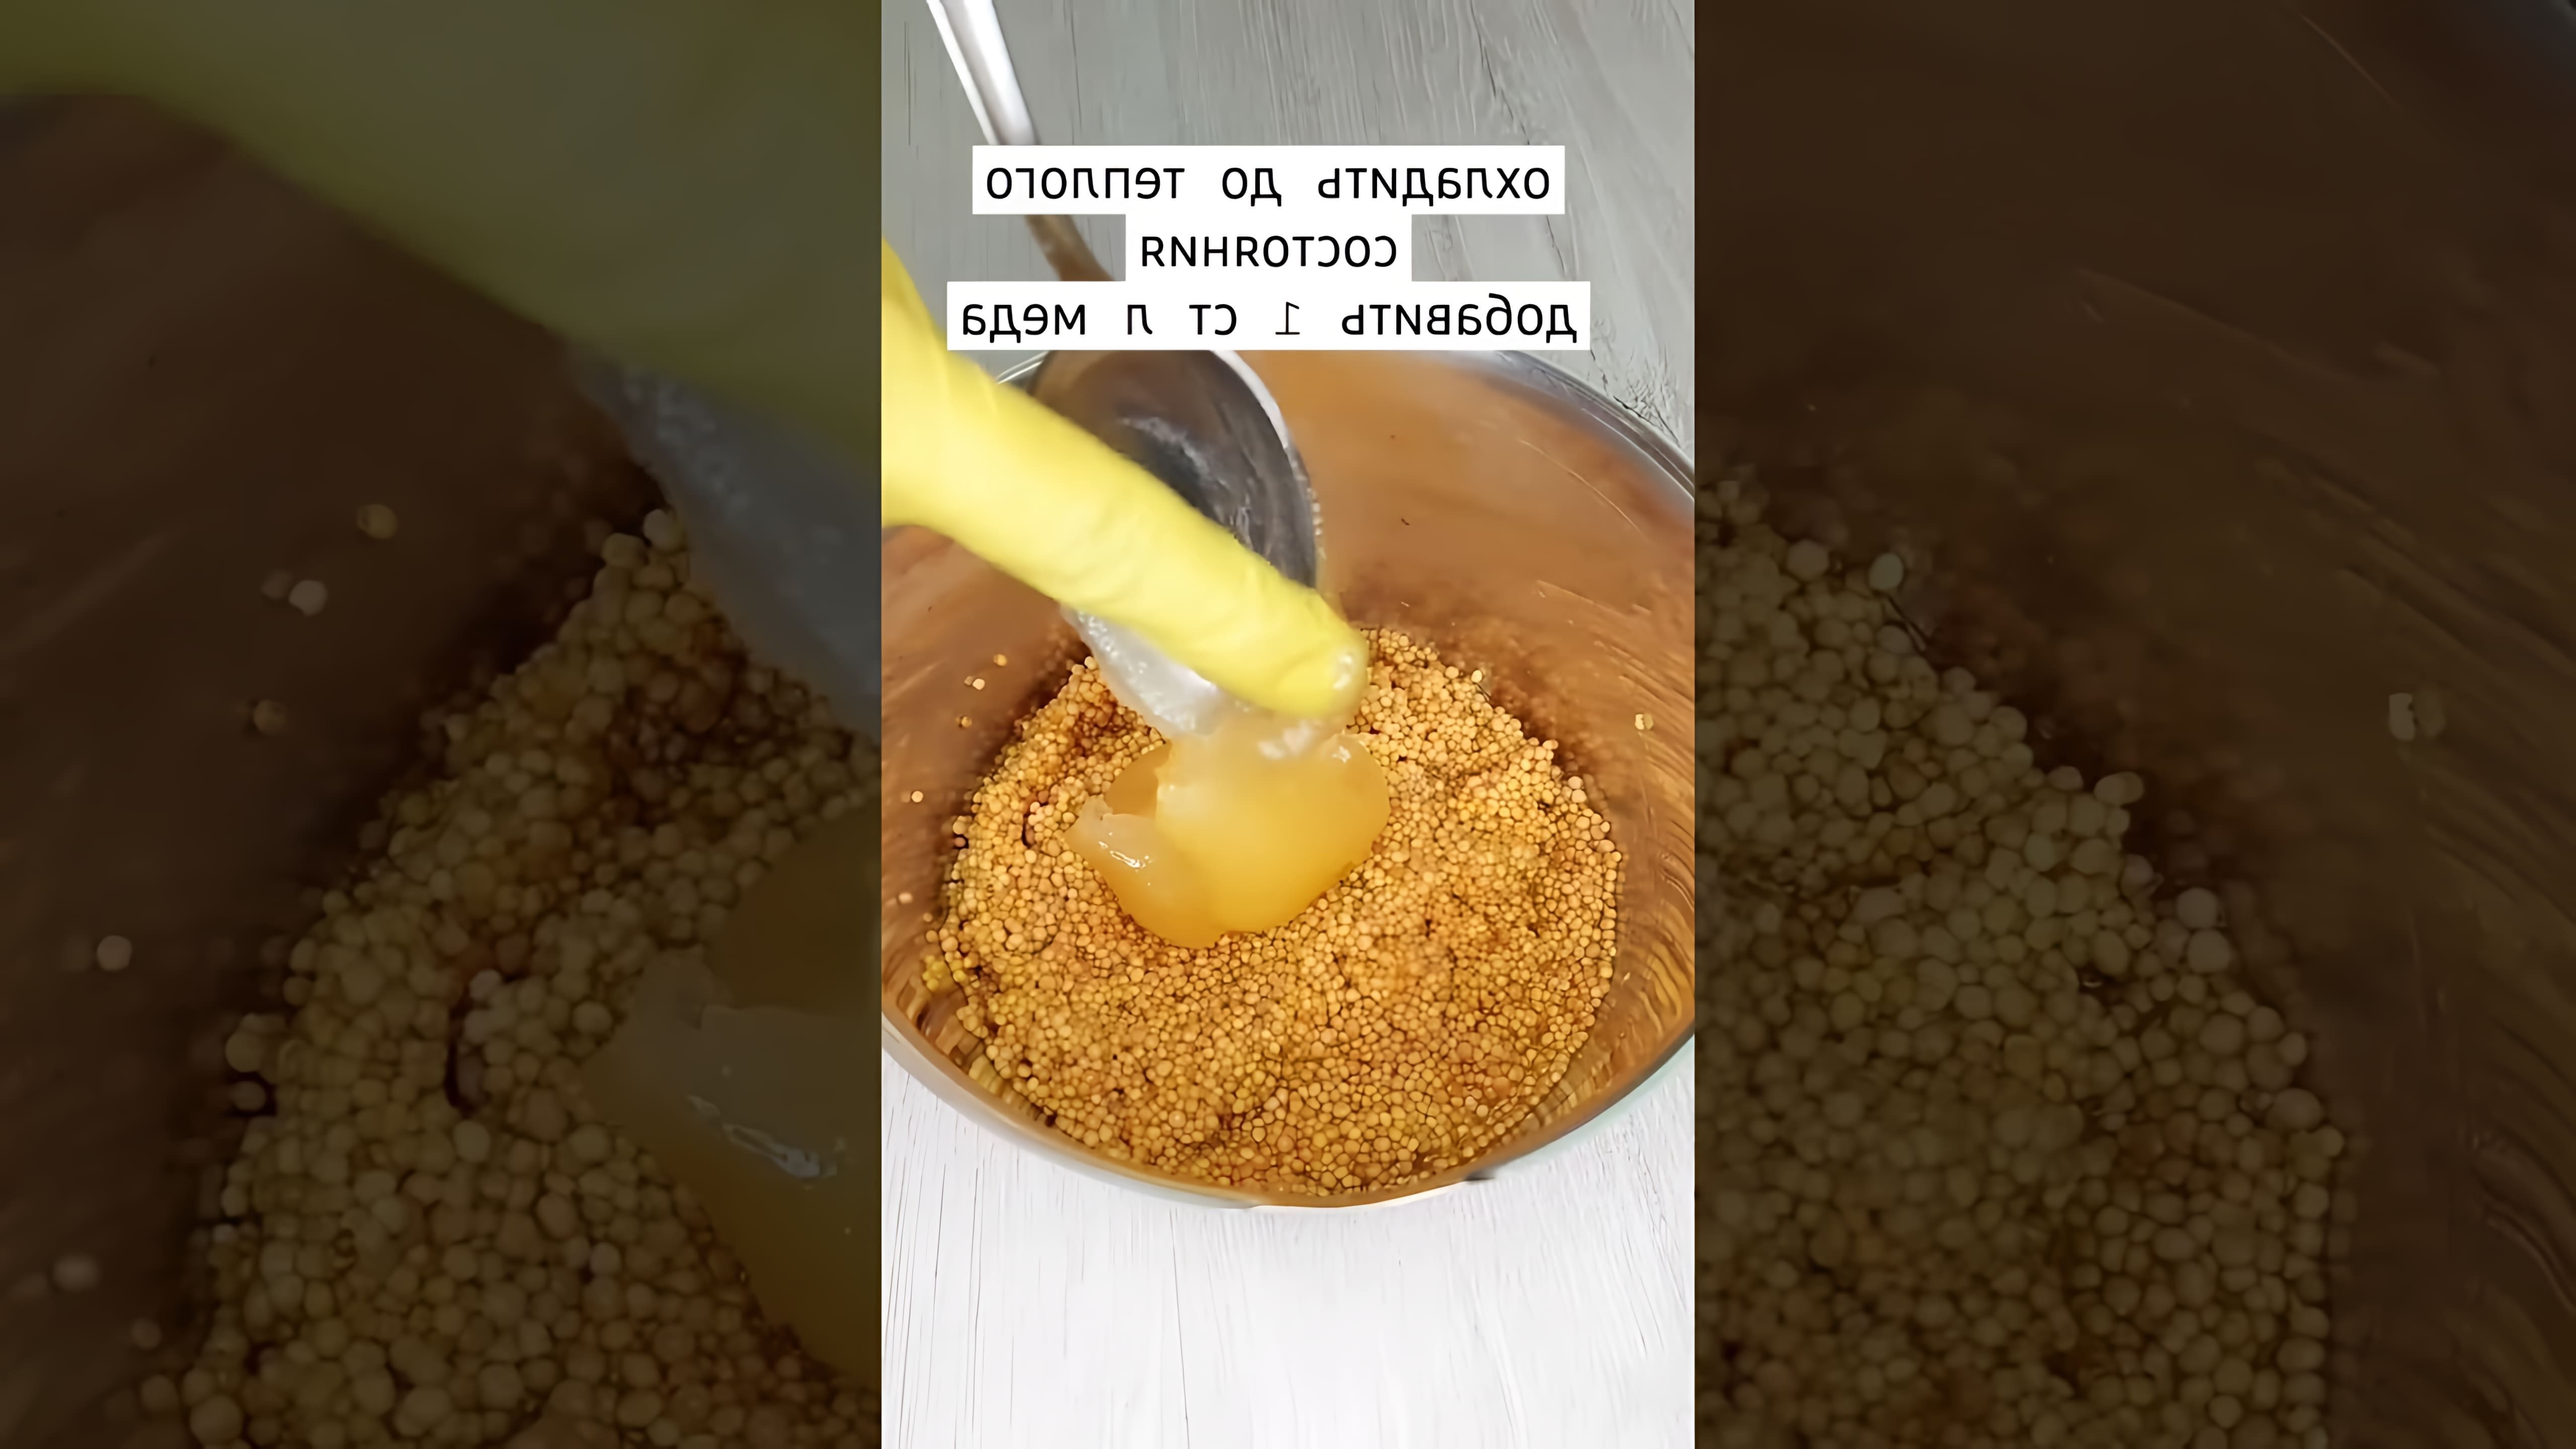 В этом видео-ролике будет представлен рецепт домашней горчицы в зернах, который идеально подходит для приготовления мяса, рыбы и овощей